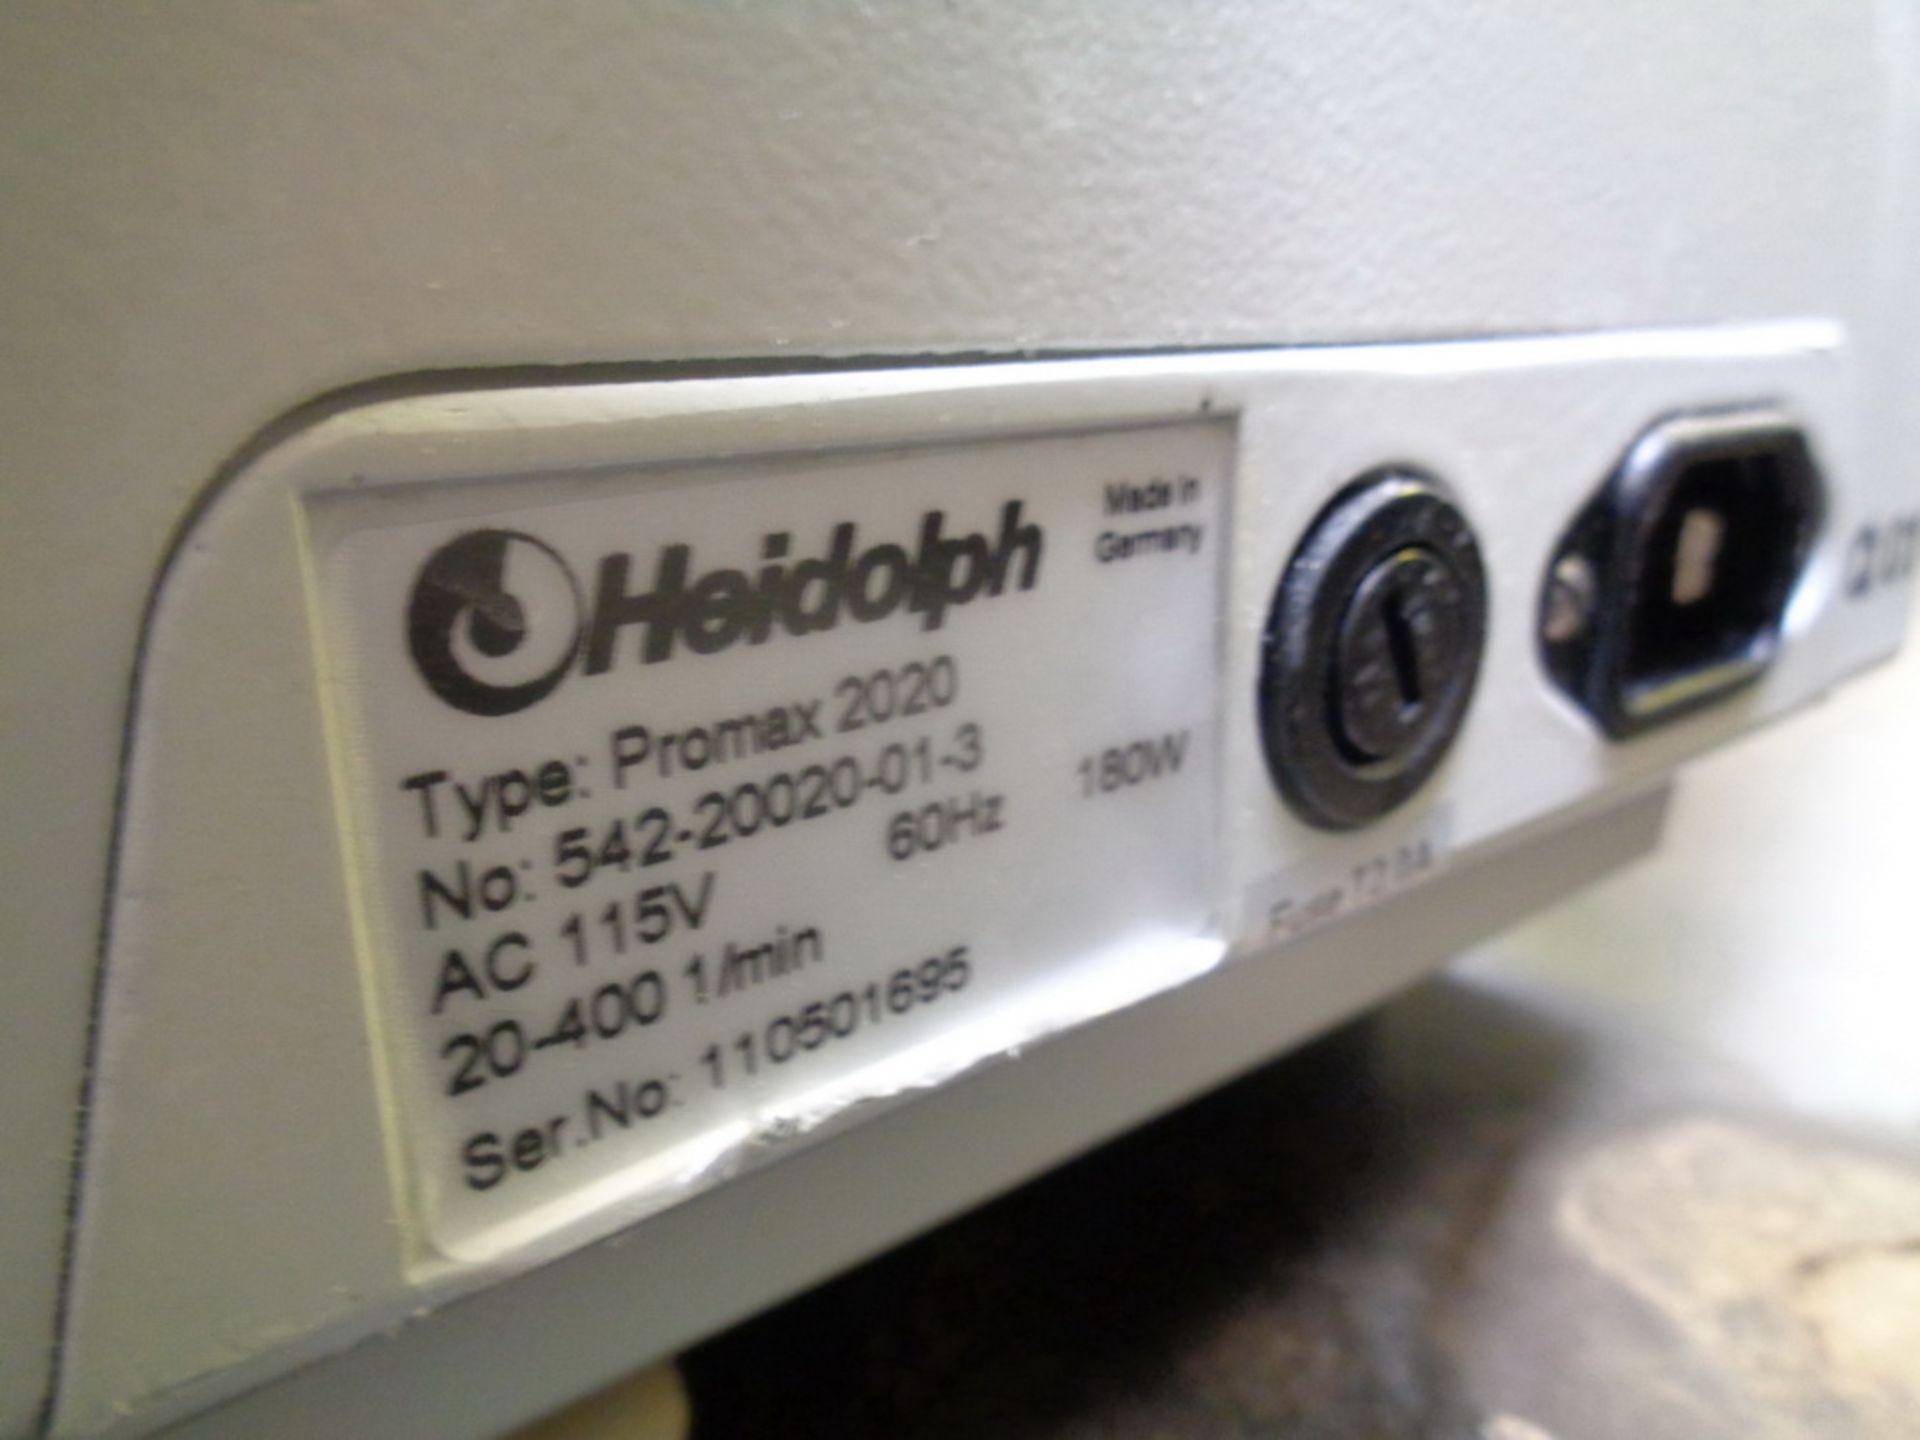 Heidolph Vial Shaker, Model Promax 2020, S/N 110501695 - Image 4 of 4